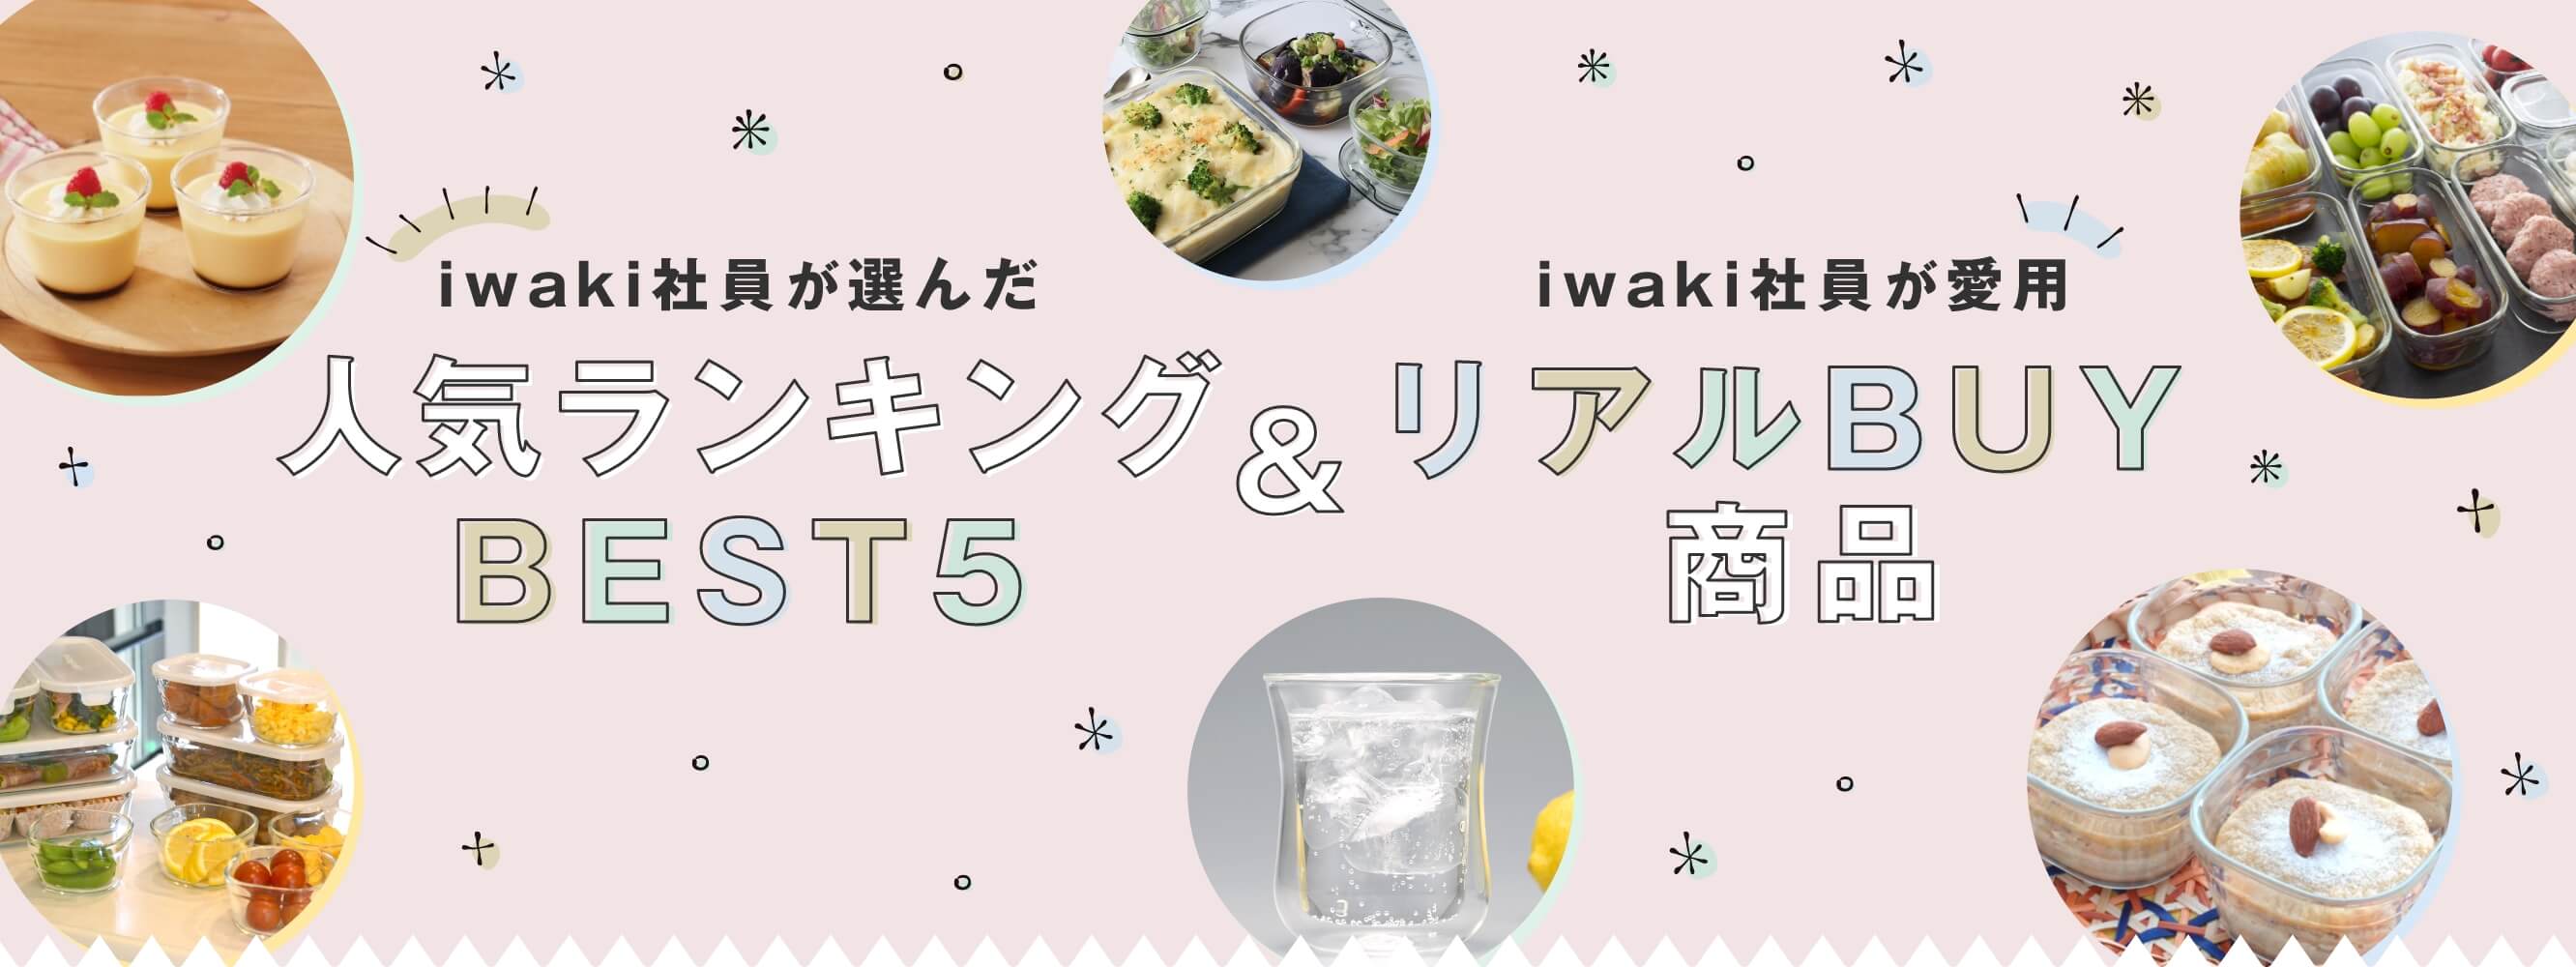 iwaki社員が選んだ人気ランキングBEST5 & iwaki社員が愛用リアルBUY商品